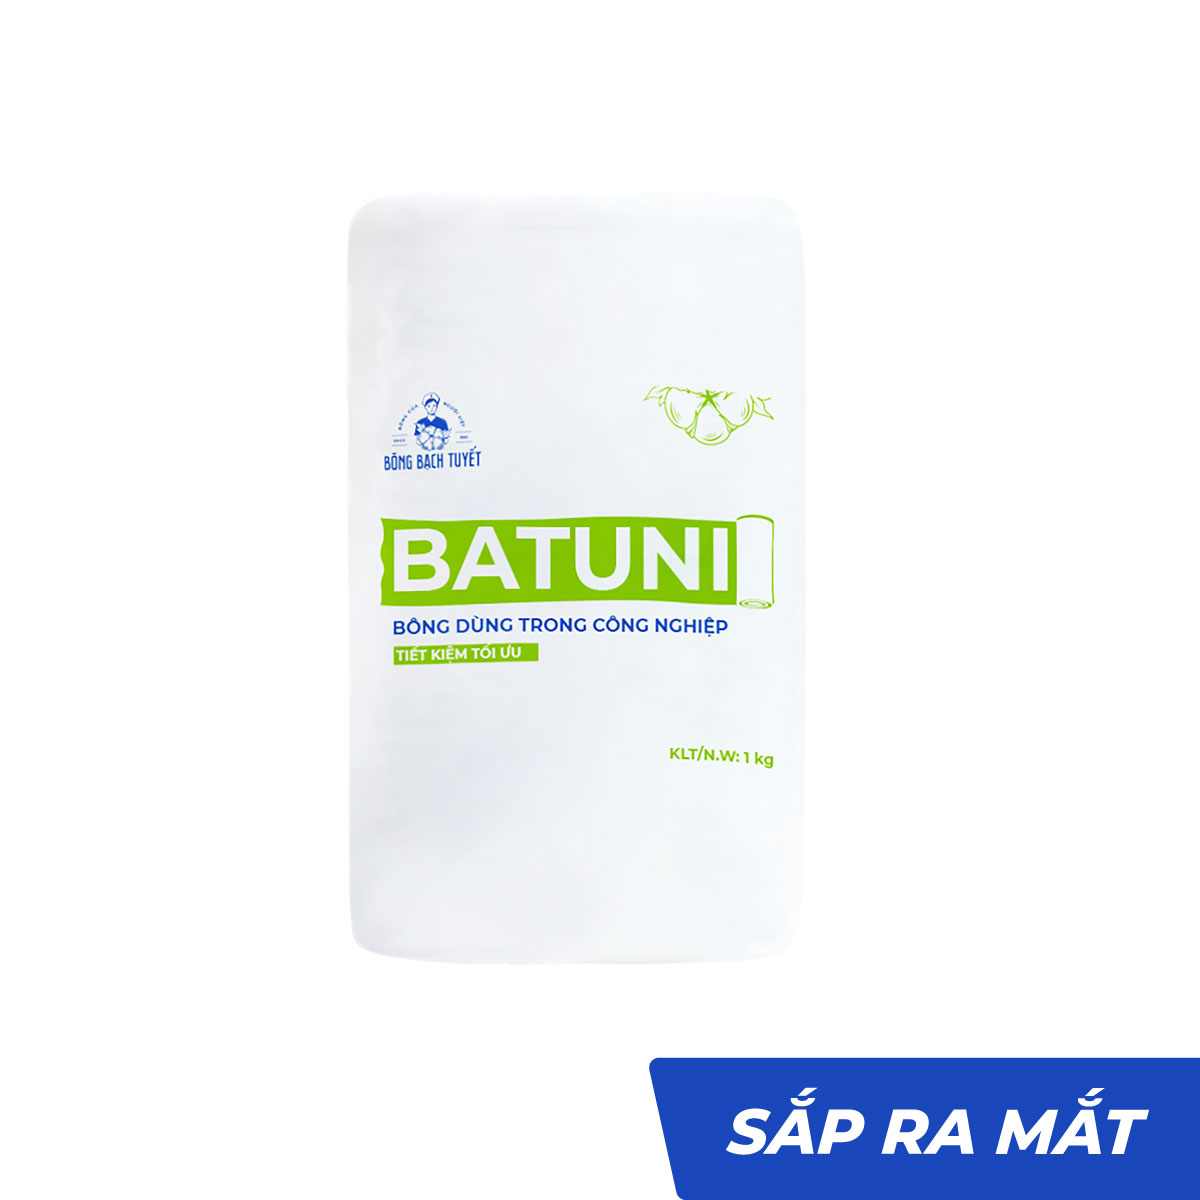 Bông gòn cuộn thấm nước công nghiệp Batuni 500g|1kg - Bông Bạch Tuyết